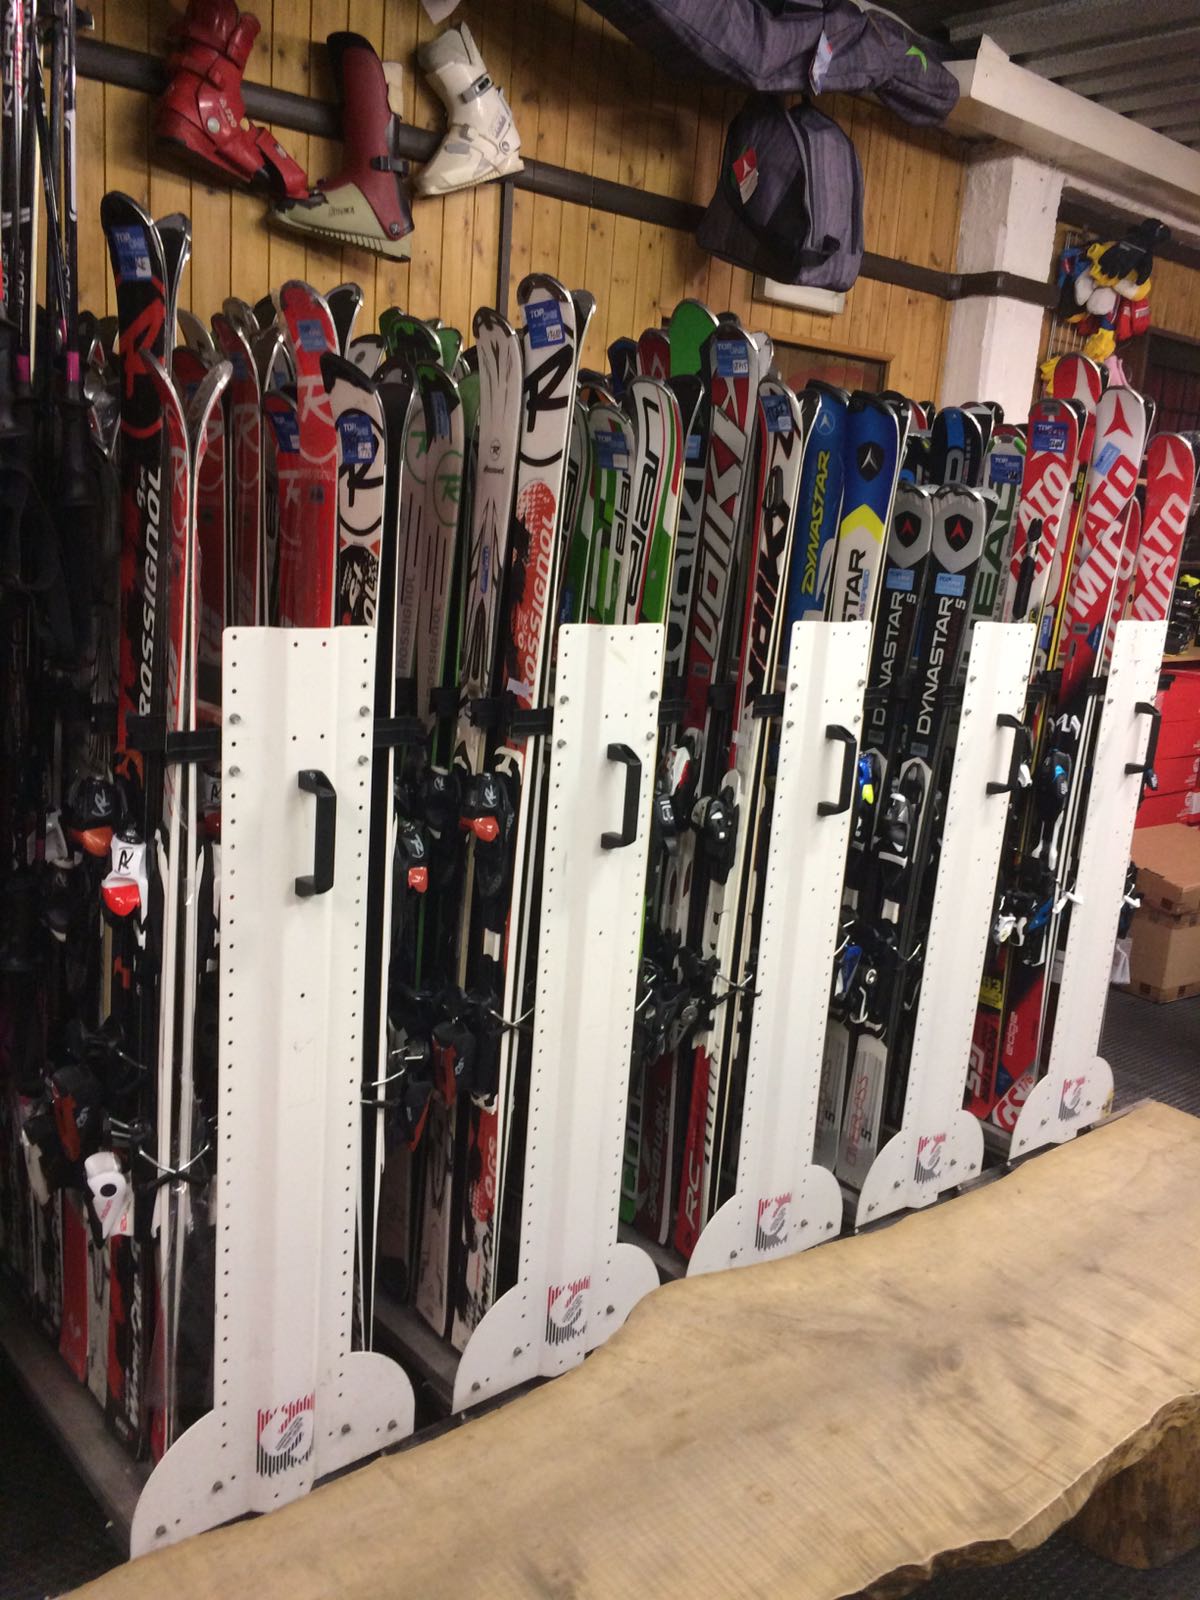 Взять лыжи в прокат. Прокат лыж. Люди в аренде лыж и сноубордов. Аренда лыж. Прокат лыж в лототрек.